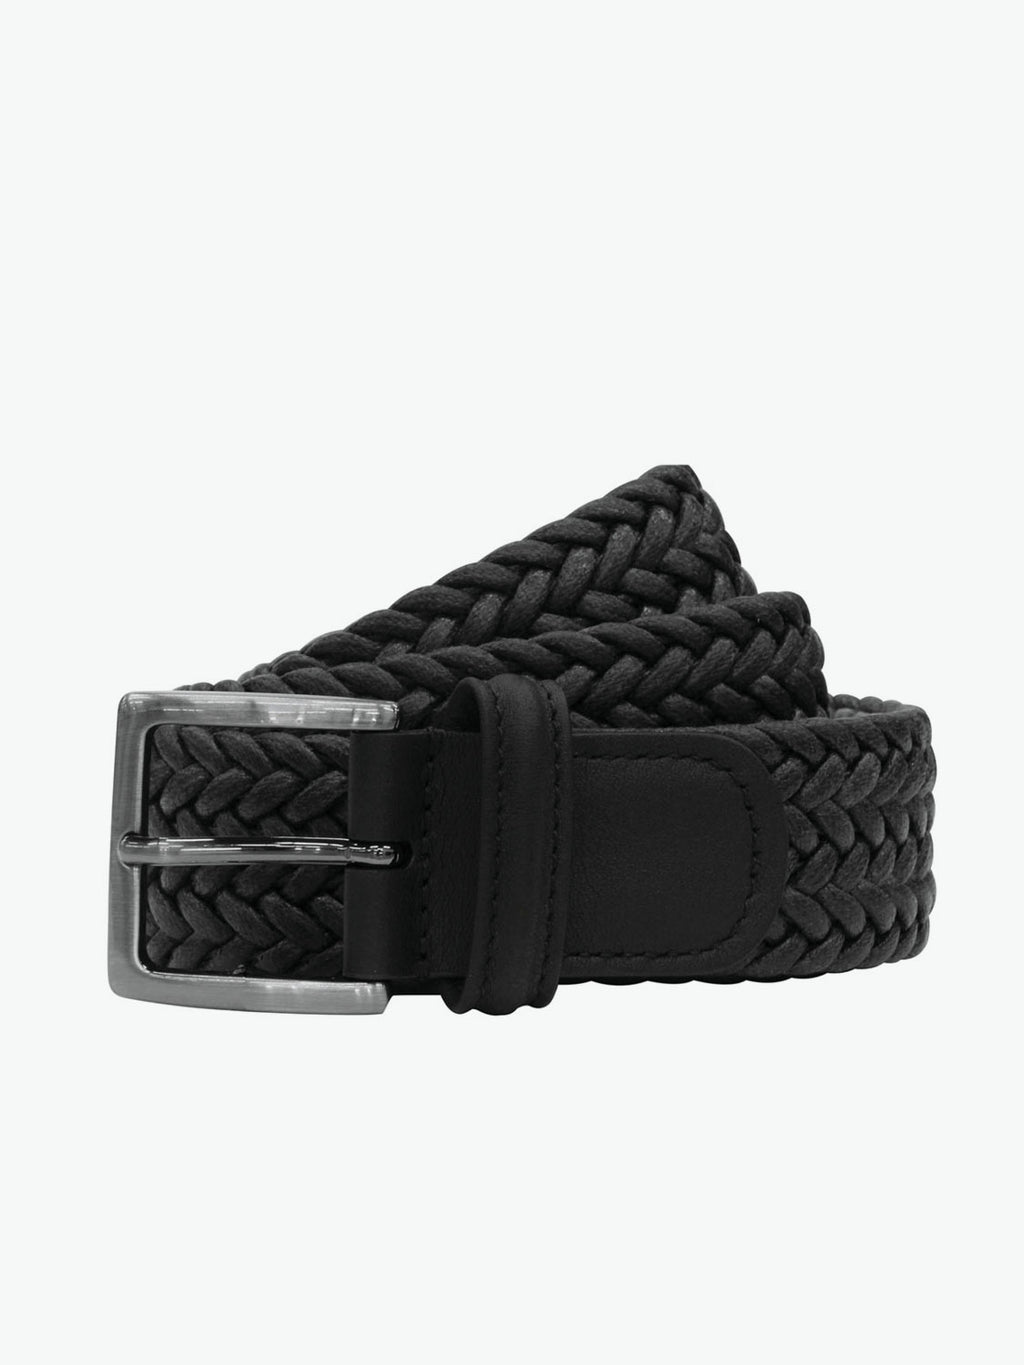 Anderson's Weave Stretch Woven Belt, Belts